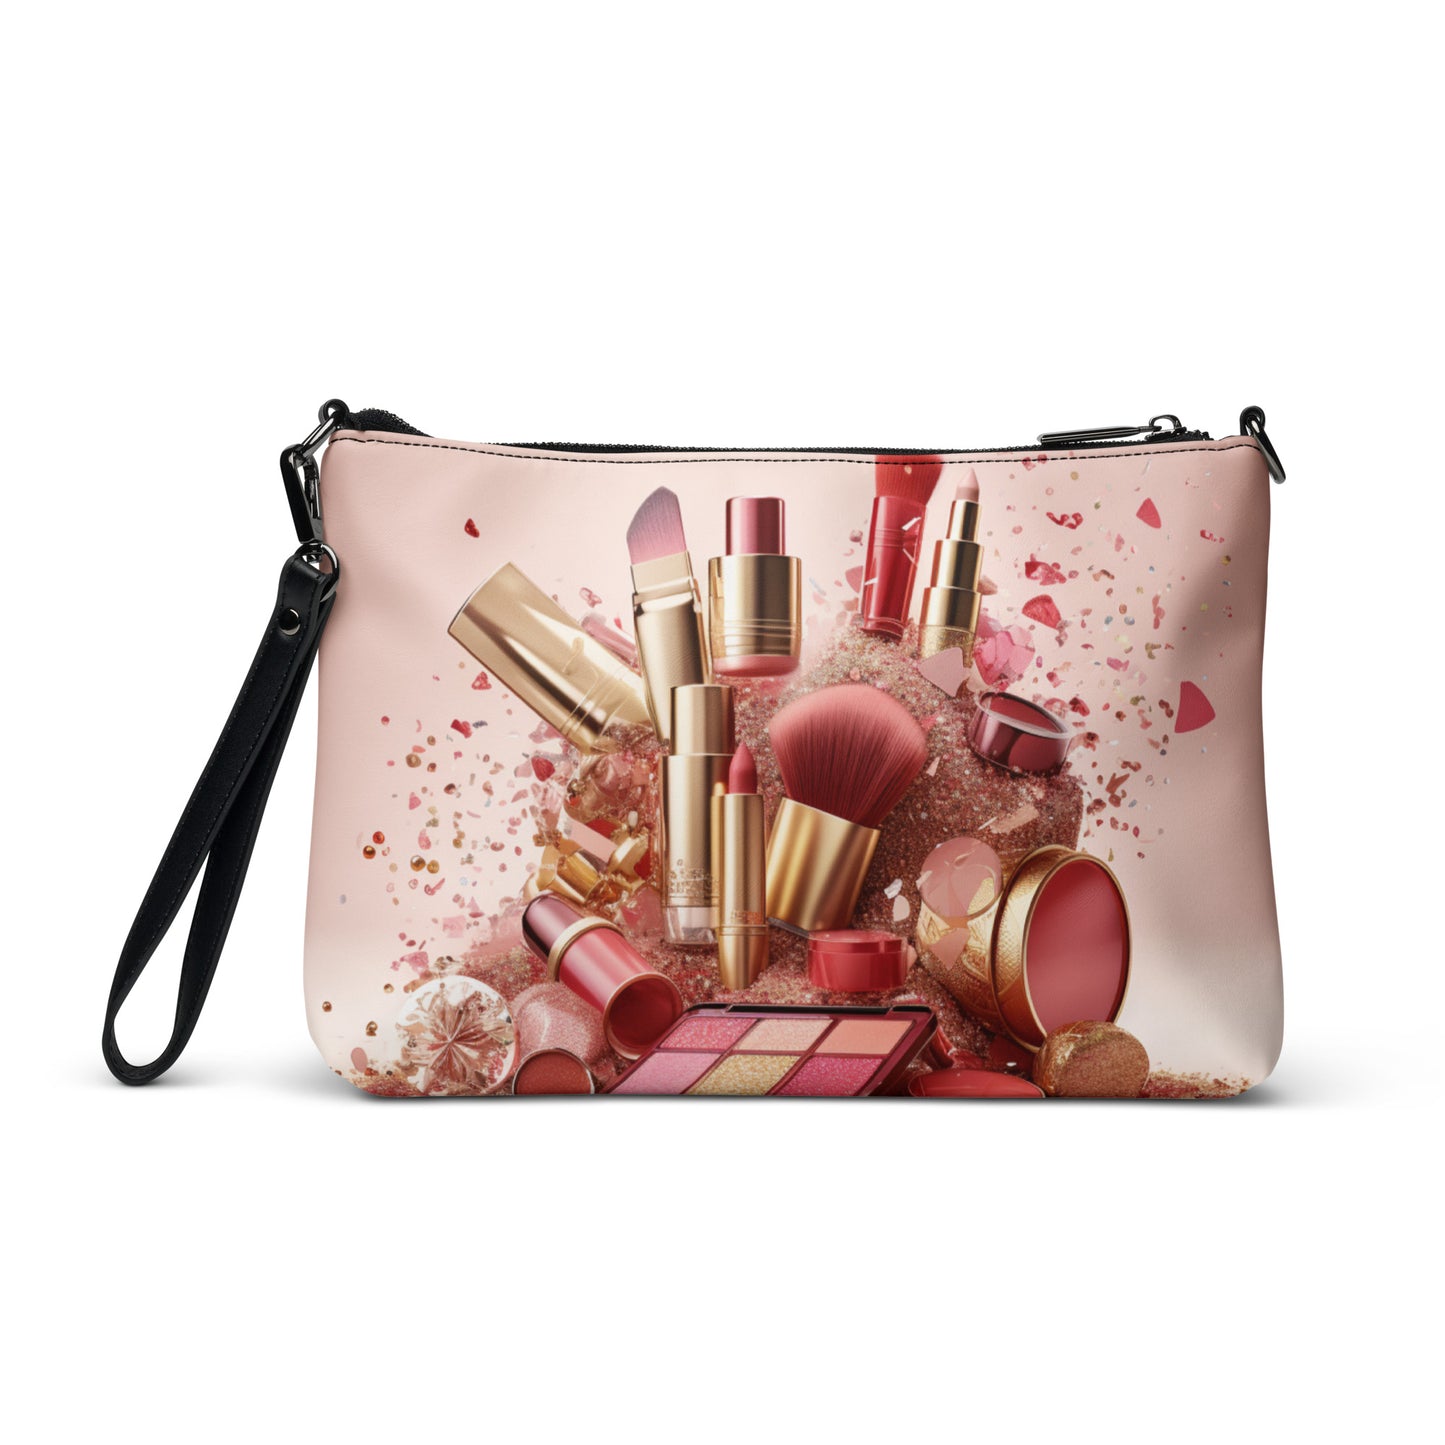 Simply Pink Makeup Bag